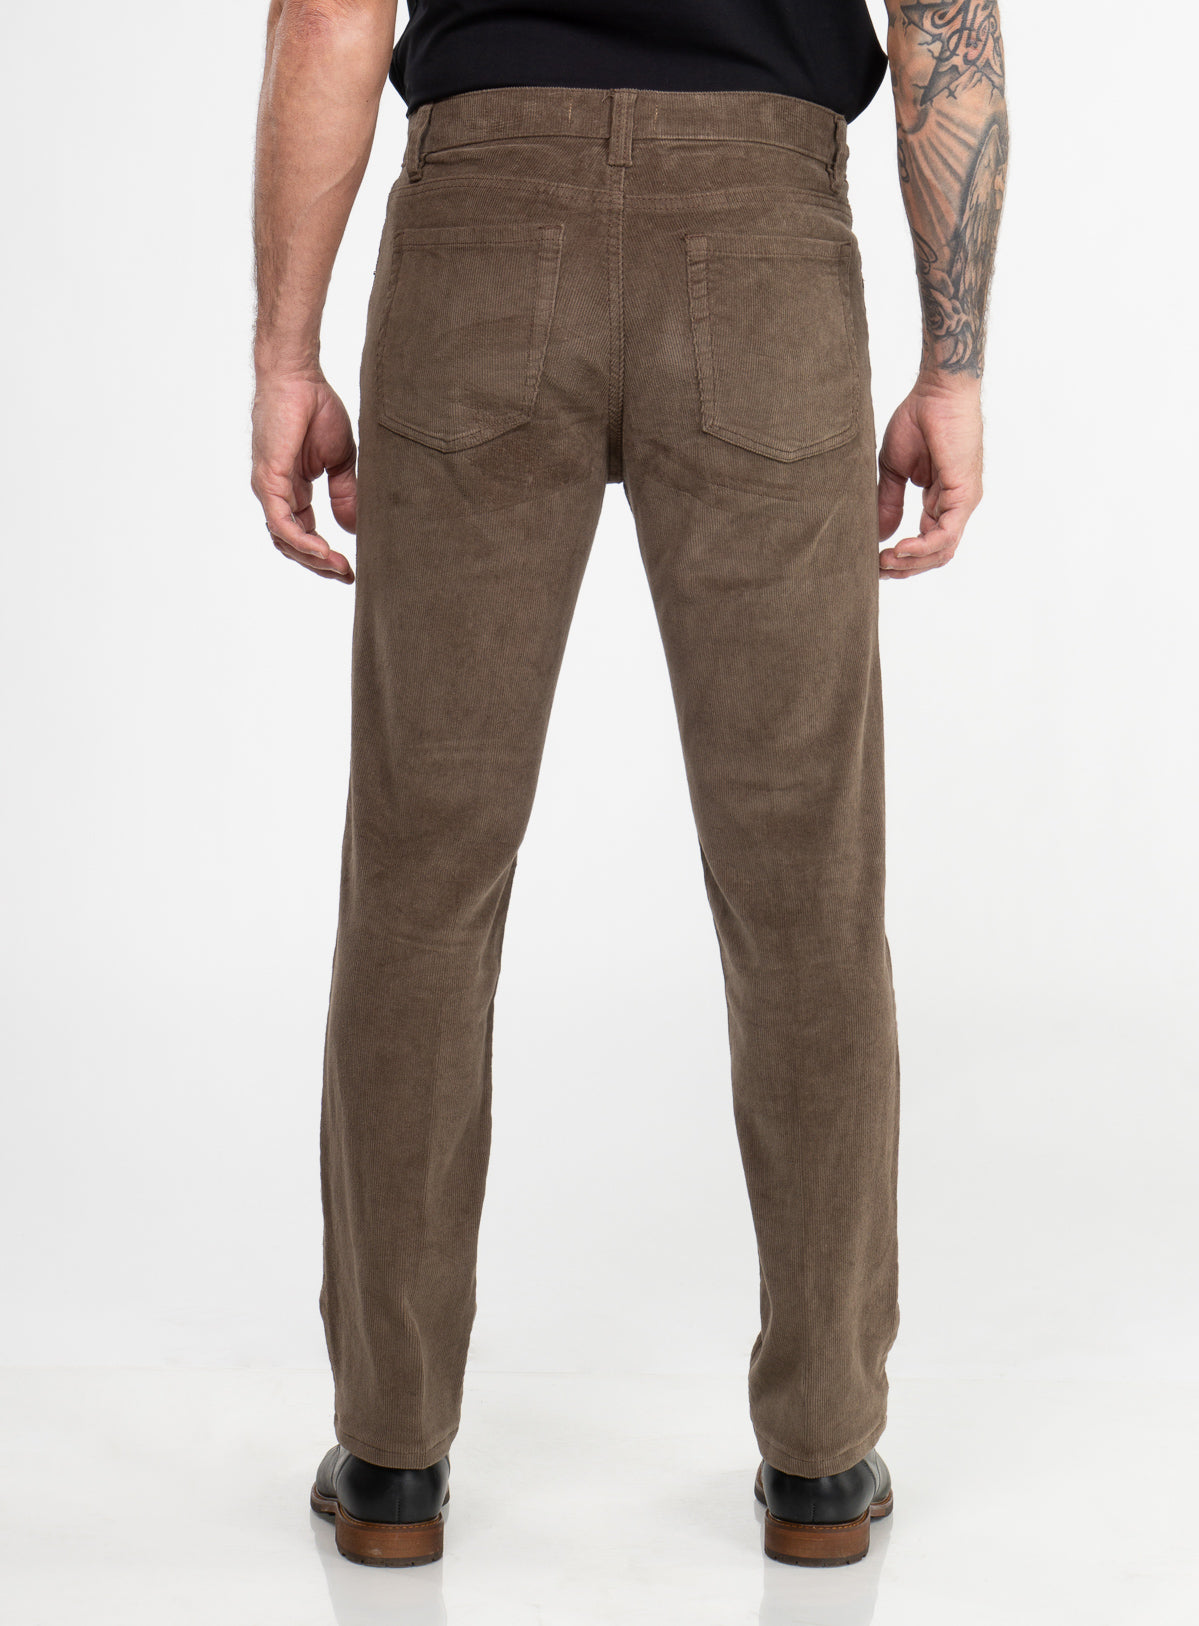 Pantalon en lin pour homme CEFALU / Pantalon en lin taille élastique motif  denim / Pantalon en velours côtelé -  Canada